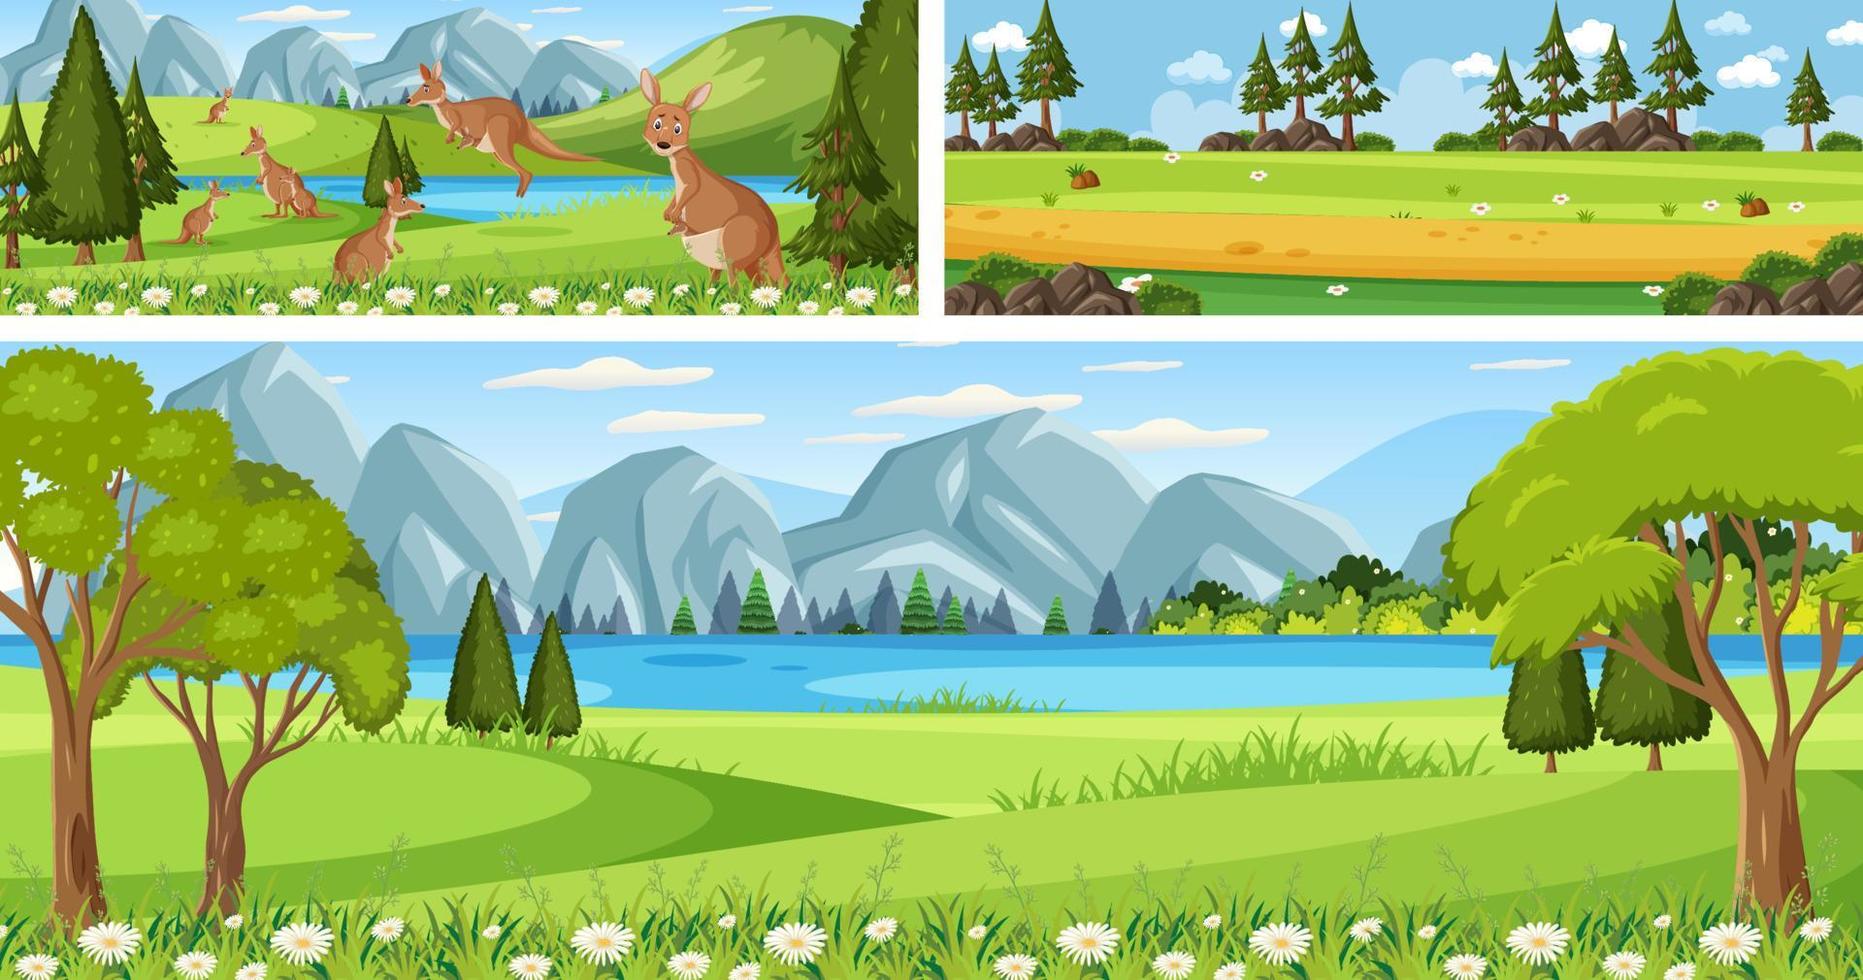 conjunto de diferentes cenas panorâmicas de paisagens externas com personagem de desenho animado vetor